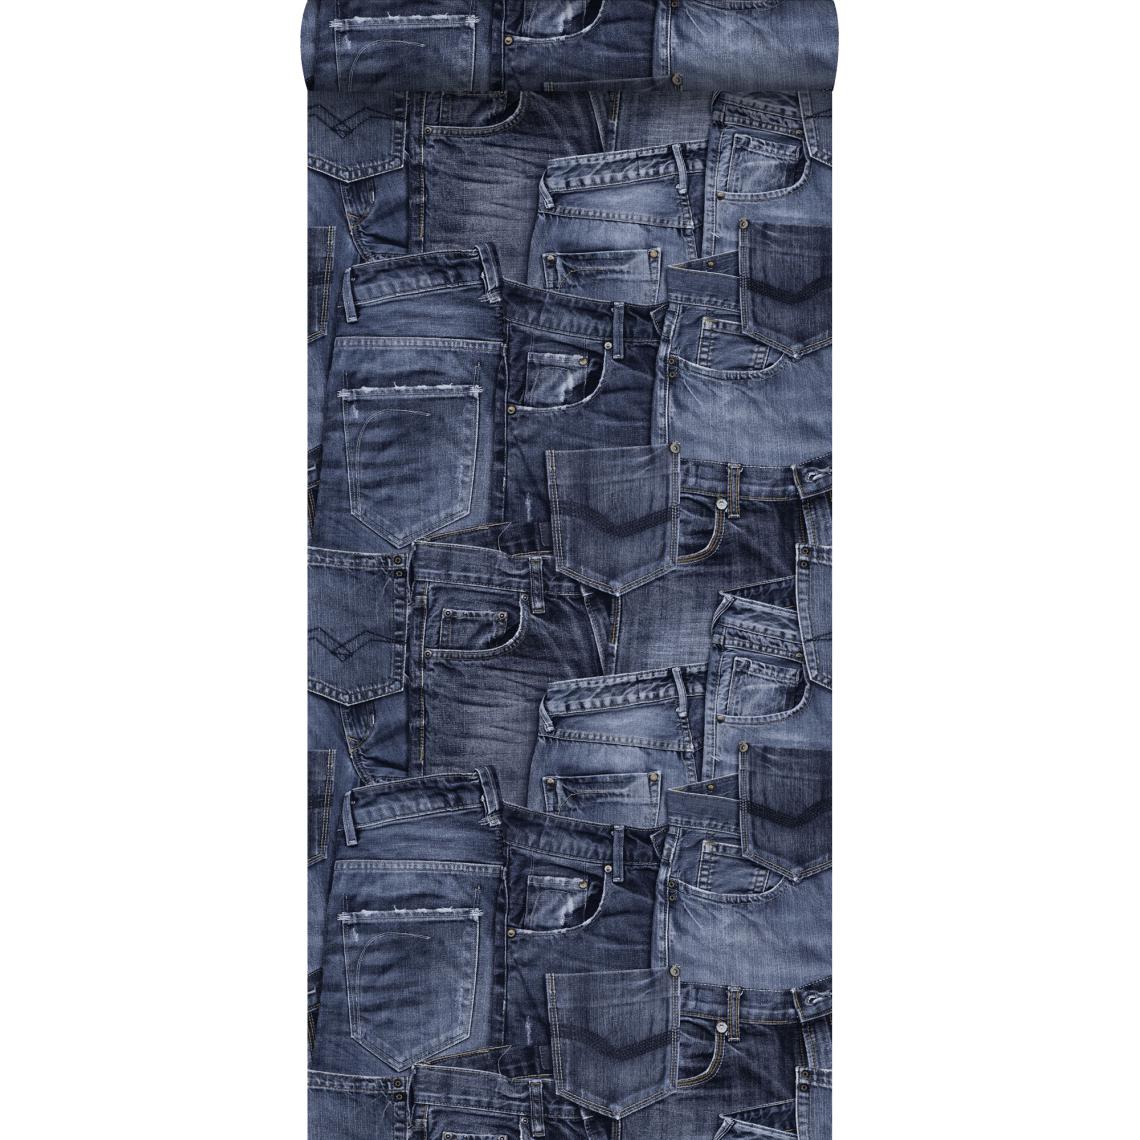 ESTAhome - ESTAhome papier peint tissu de jeans bleu foncé - 137736 - 53 cm x 10,05 m - Papier peint